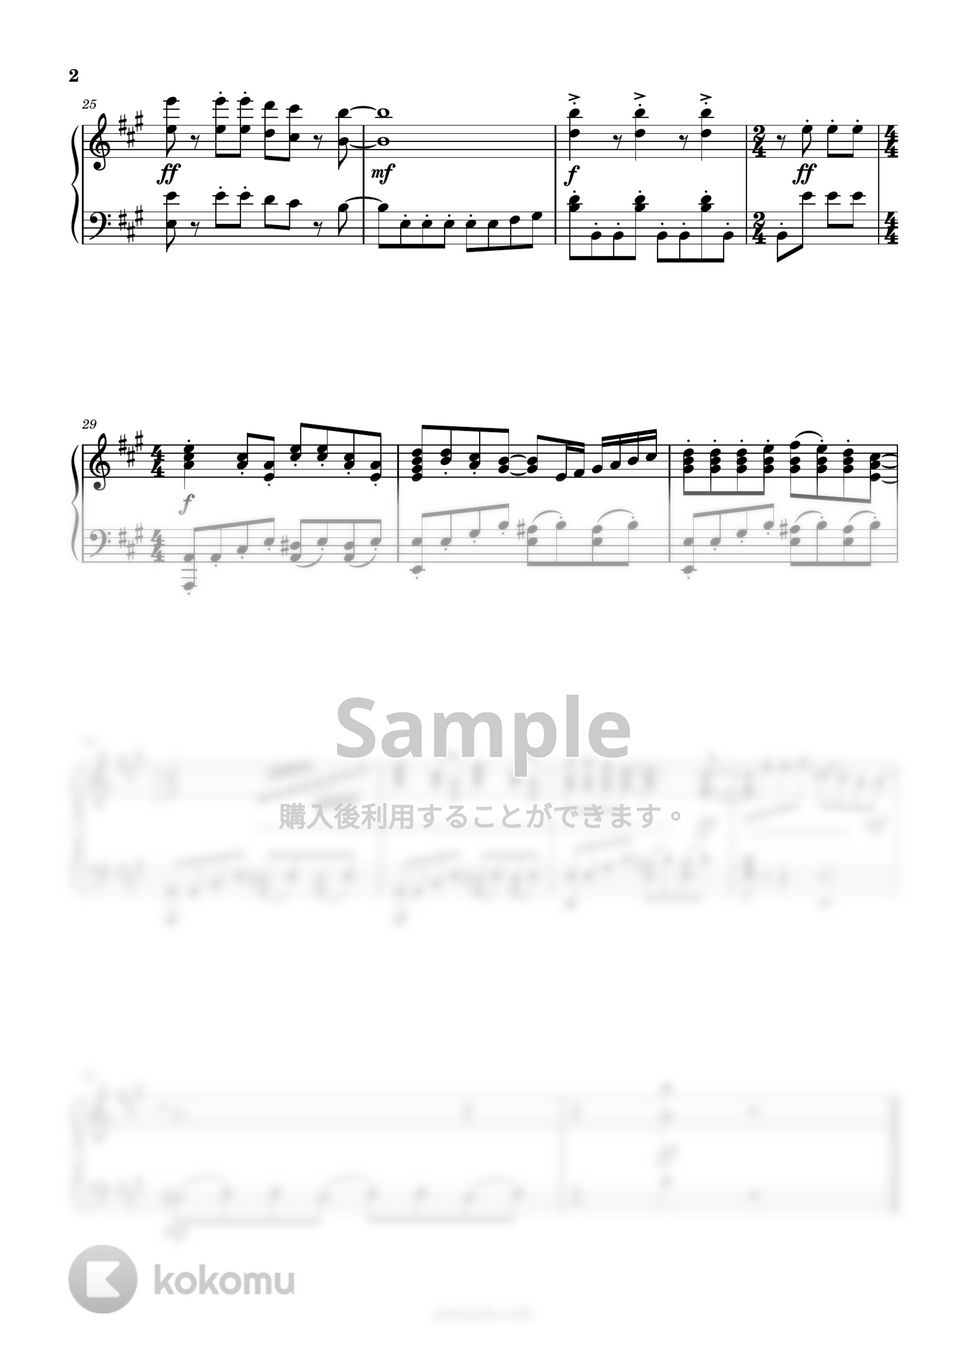 久石譲 - ねこバス by ピアノ塾